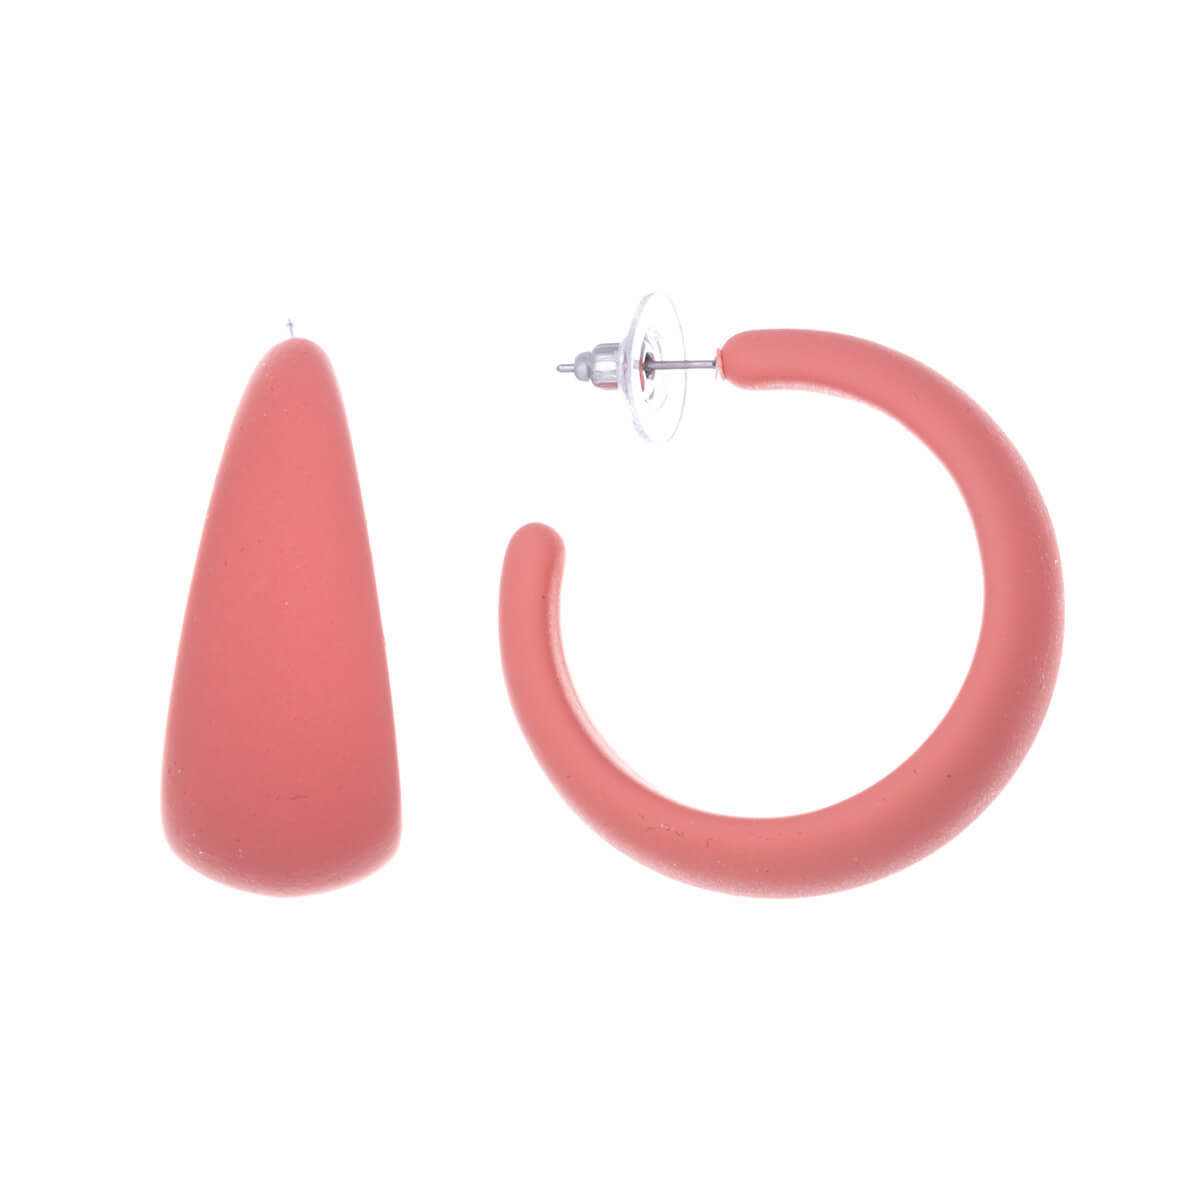 Plastic rings earrings 3,8cm